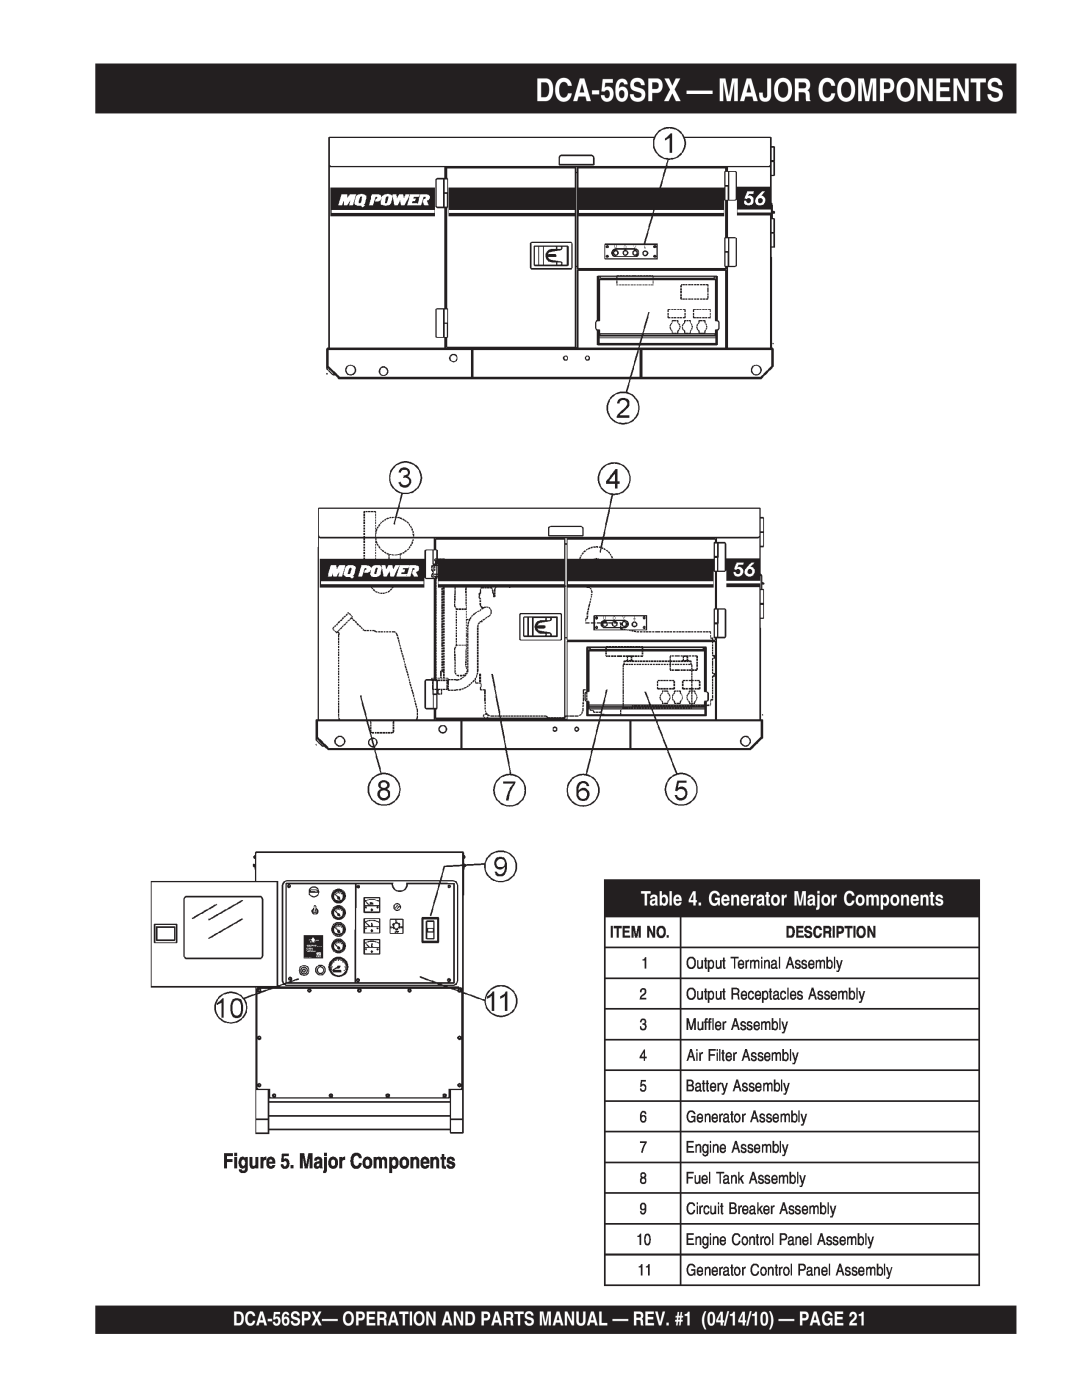 Multiquip operation manual DCA-56SPX- MAJOR COMPONENTS, Generator Major Components, Item No, Description 